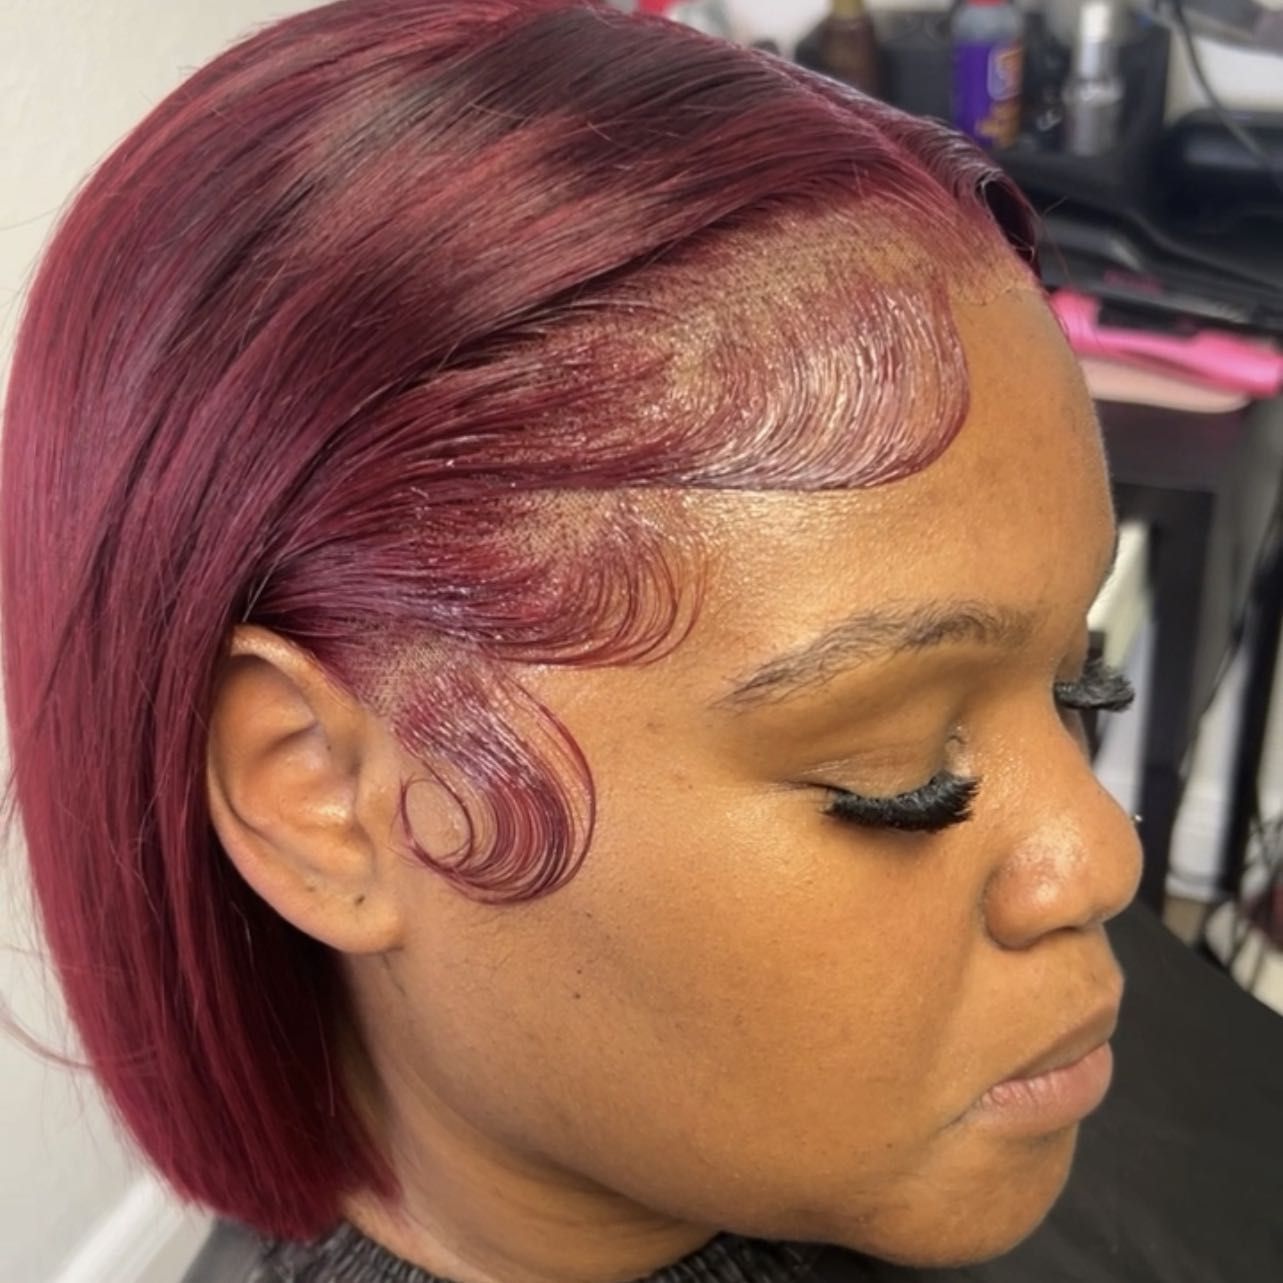 Lace wig cut into a bob portfolio